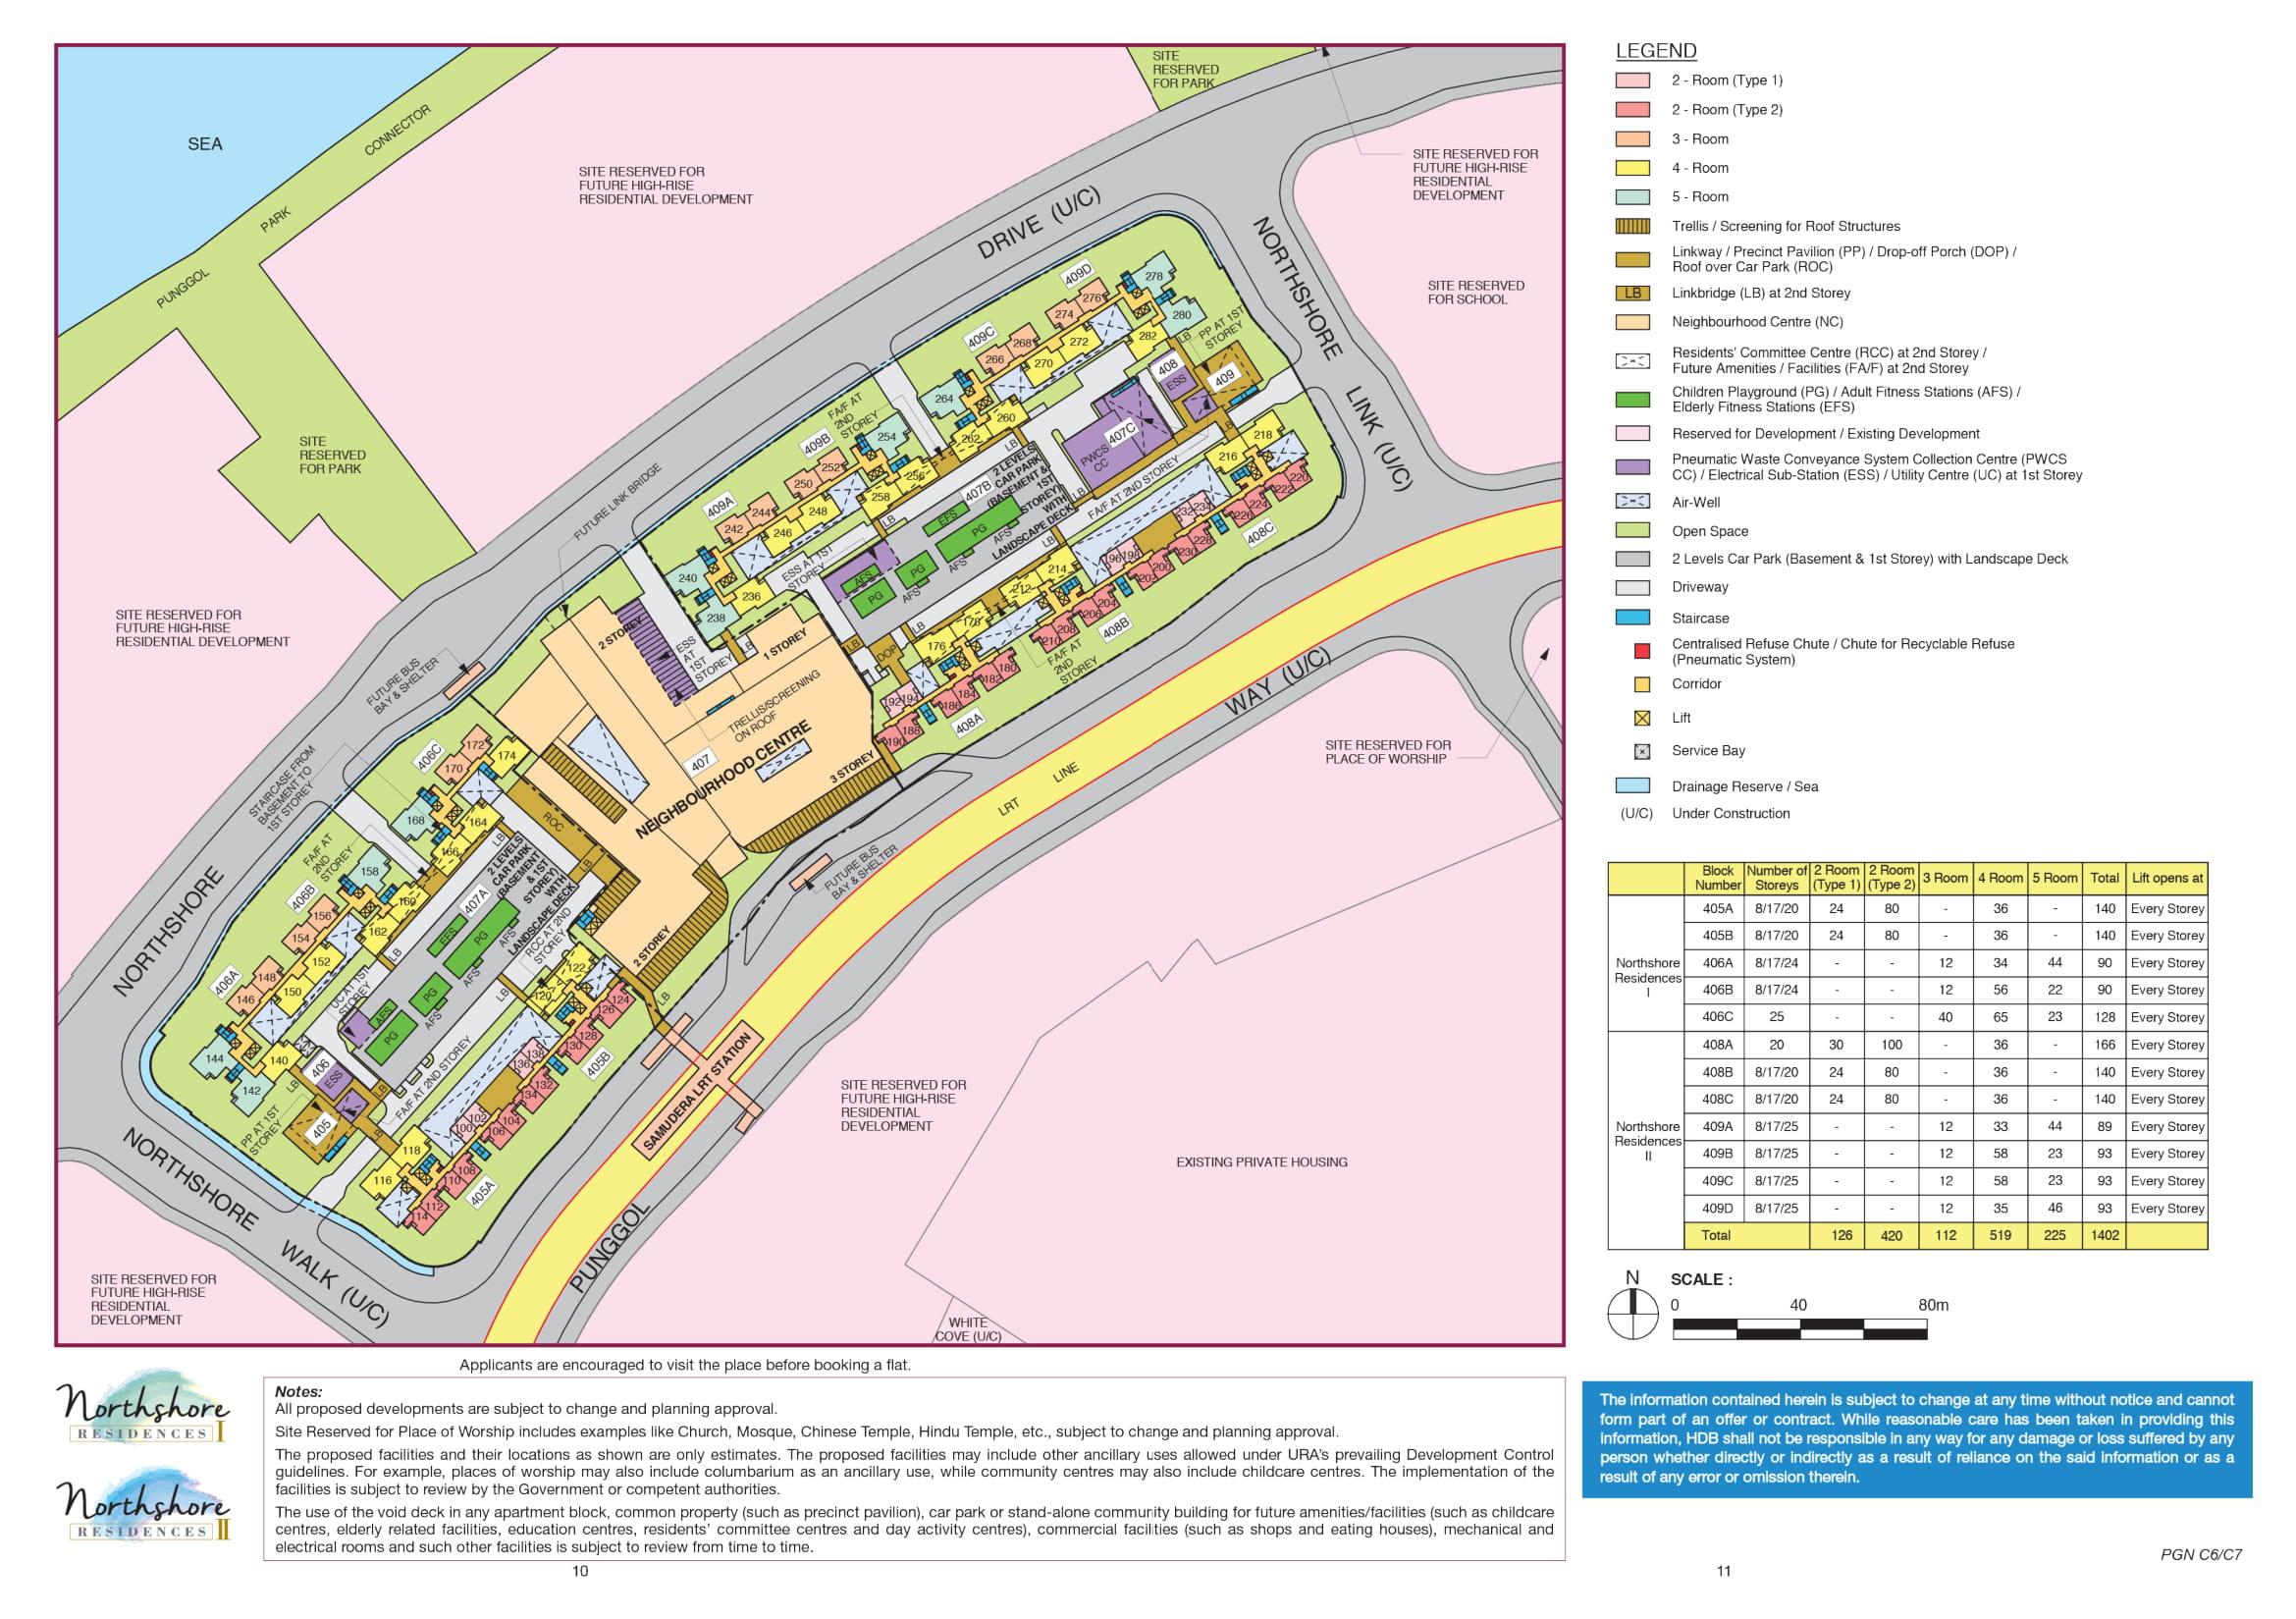 Northshore Residences II Site Plan